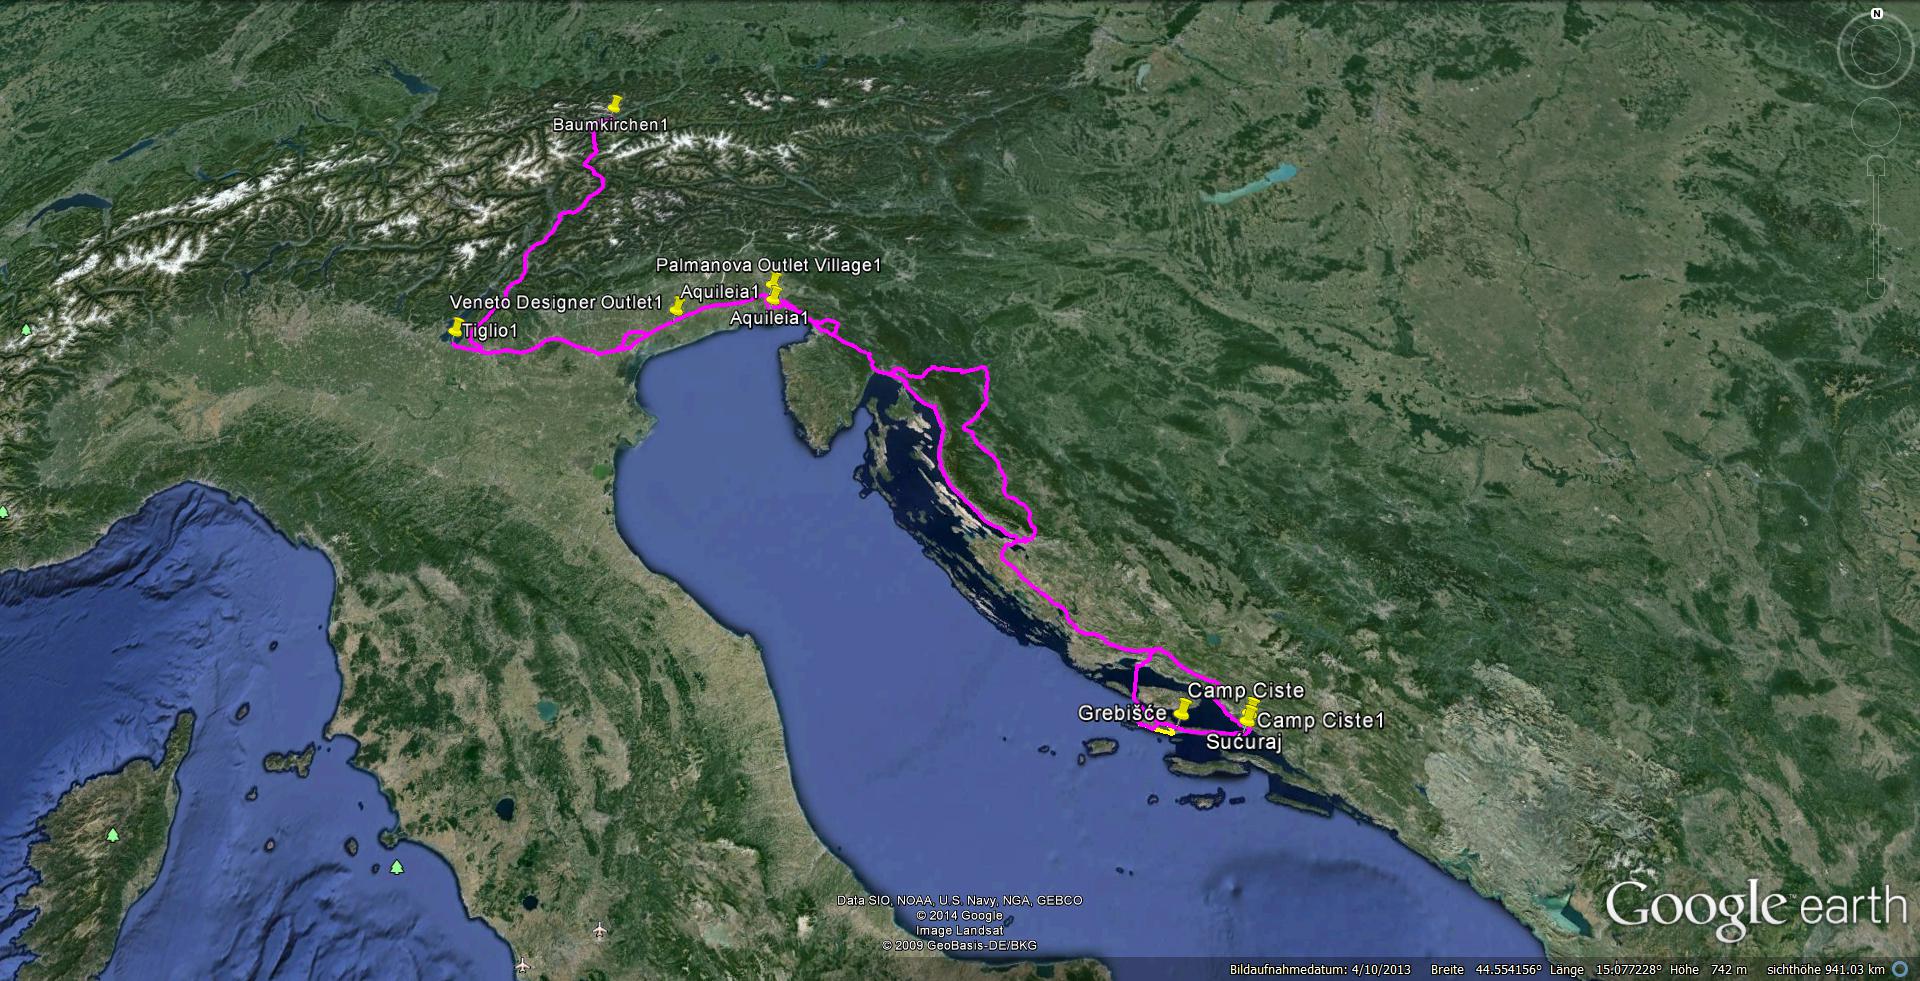 Insel Hvar & Dalmatien vom 25.4. bis 4.5.2014. Das Campingjahr 2014 wollen wir mit einer Tour nach Kroatien einleiten. Diesmal ist die Insel Hvar unser Hauptziel.